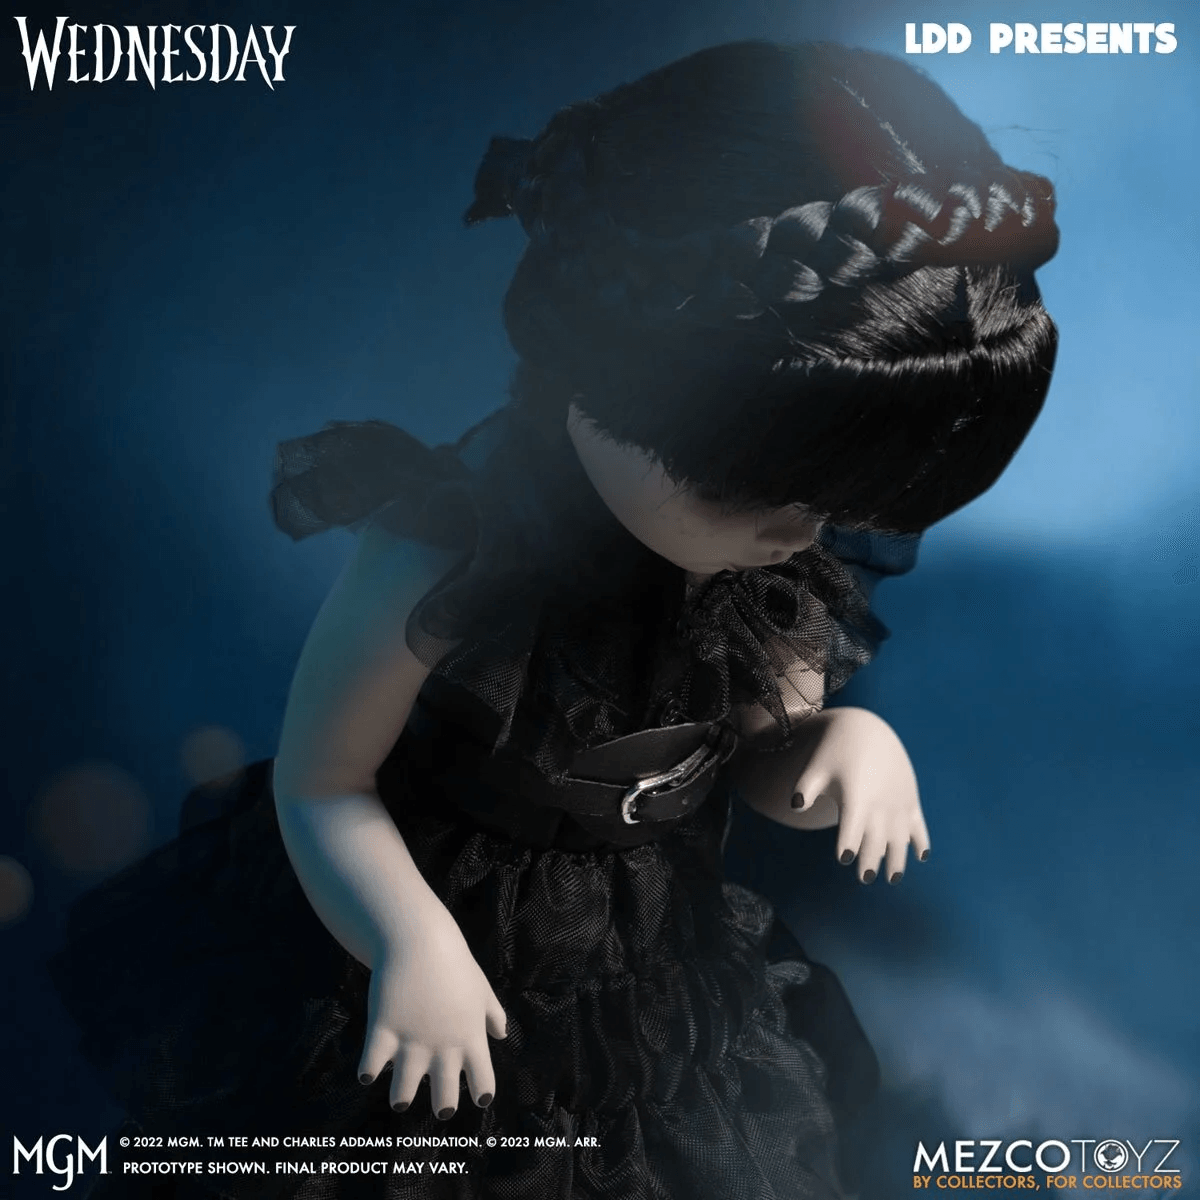 MEZ99674 LDD Presents - Dancing Wednesday Living Dead Doll - Mezco Toyz - Titan Pop Culture